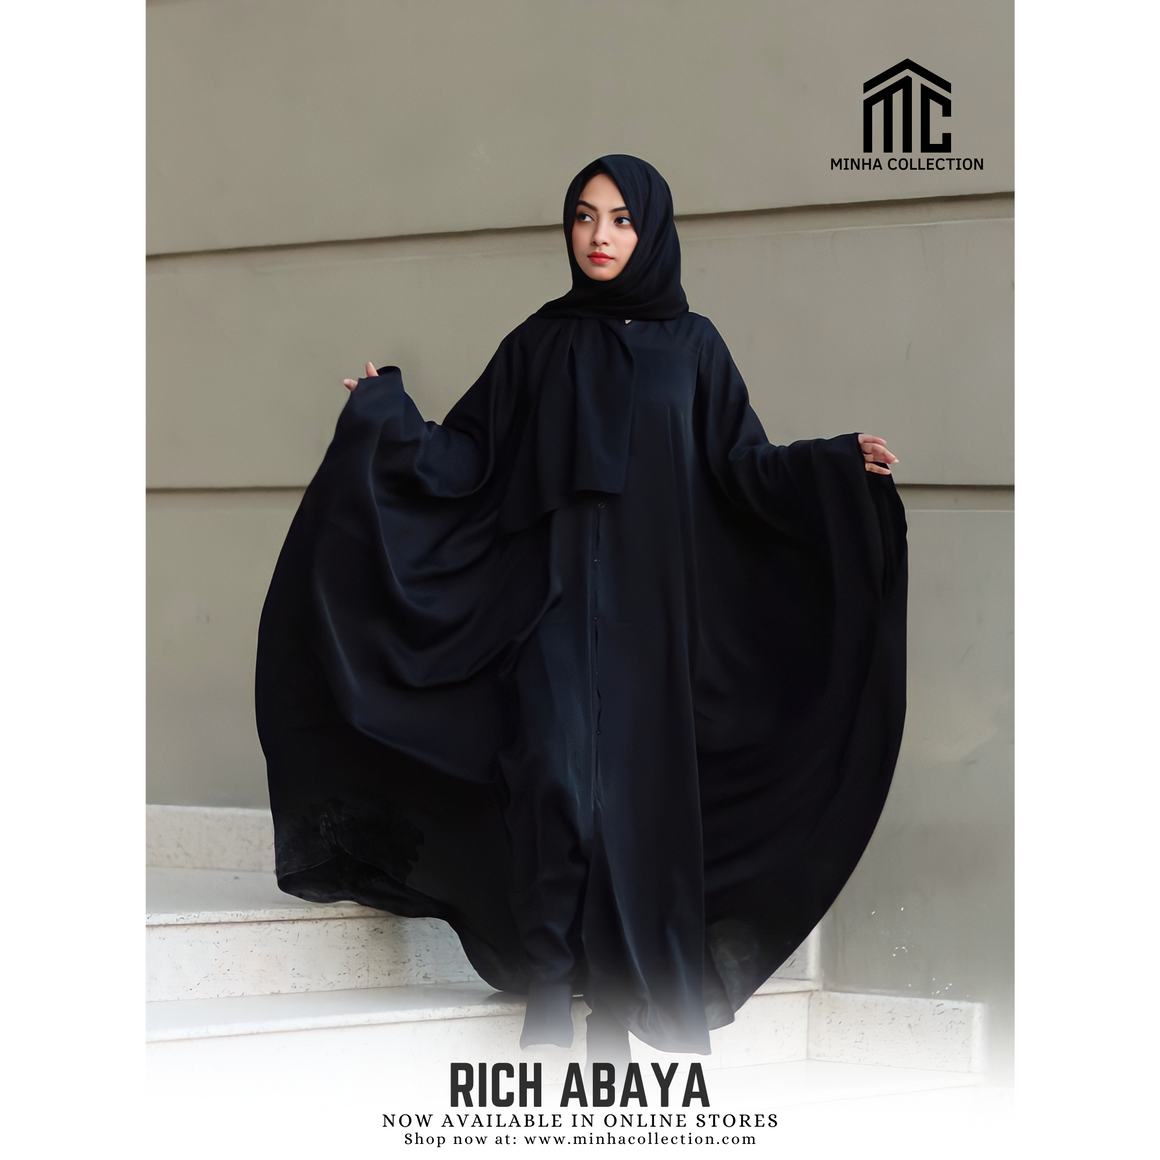 Rich Abaya